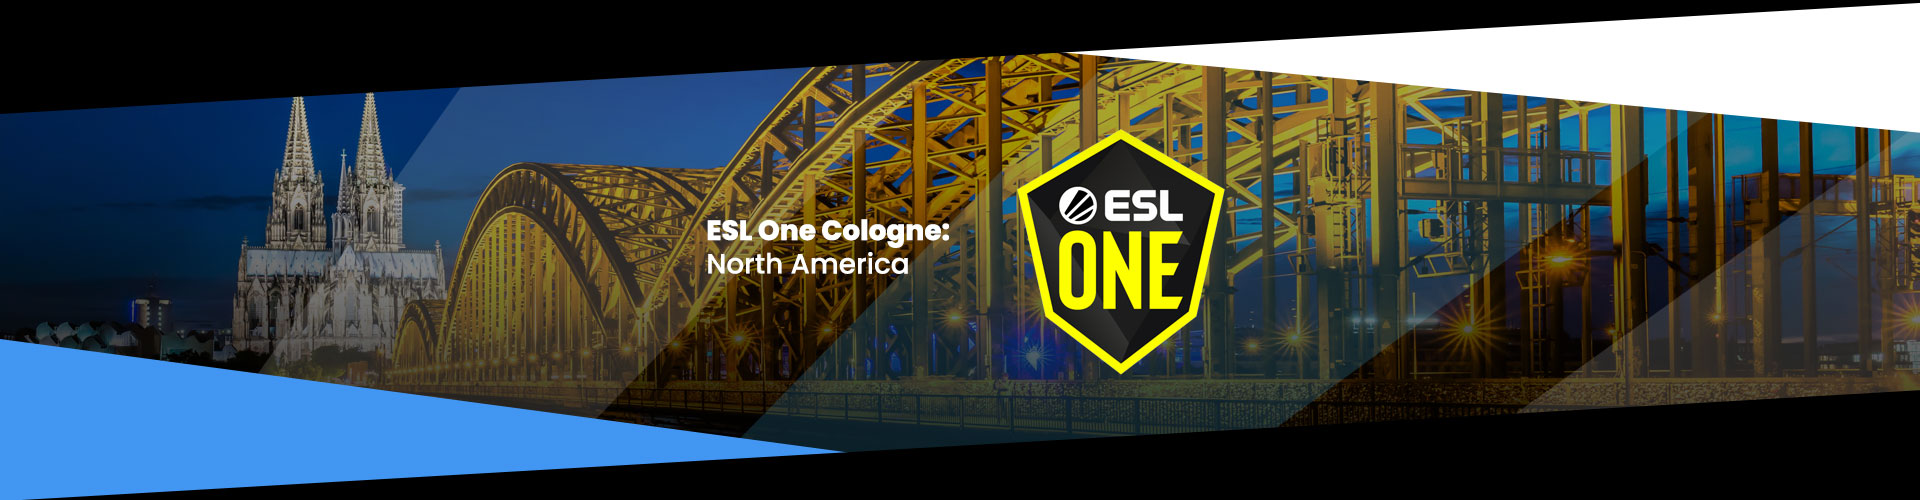 ESL One Cologne Online